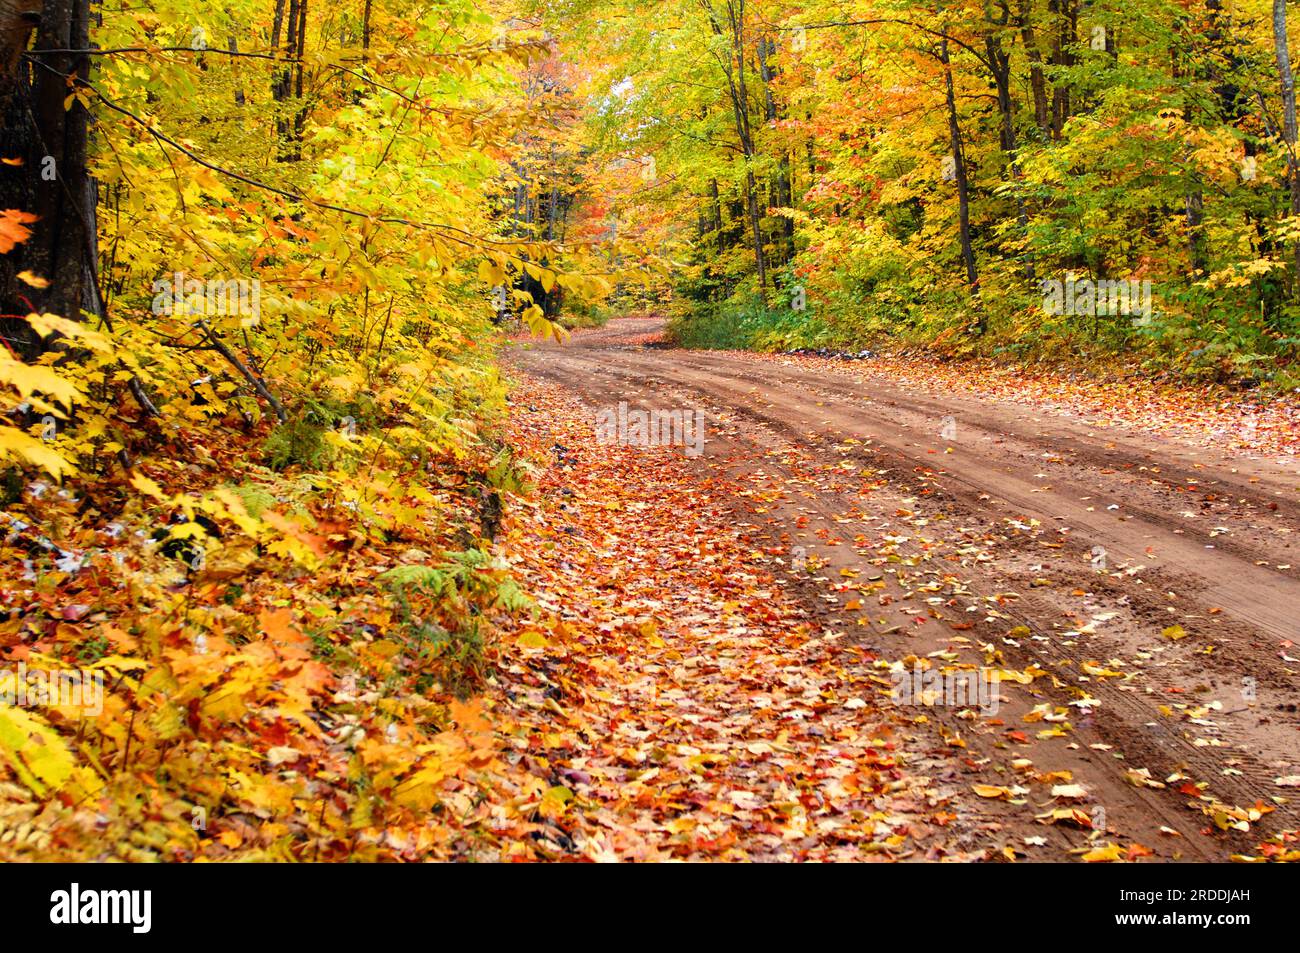 L'autunno colora queste strade secondarie, che si snodano in una tela di colori nell'Upper Penninsula, Michigan. Corsia sterrata, curva A S, in lontananza. Foto Stock